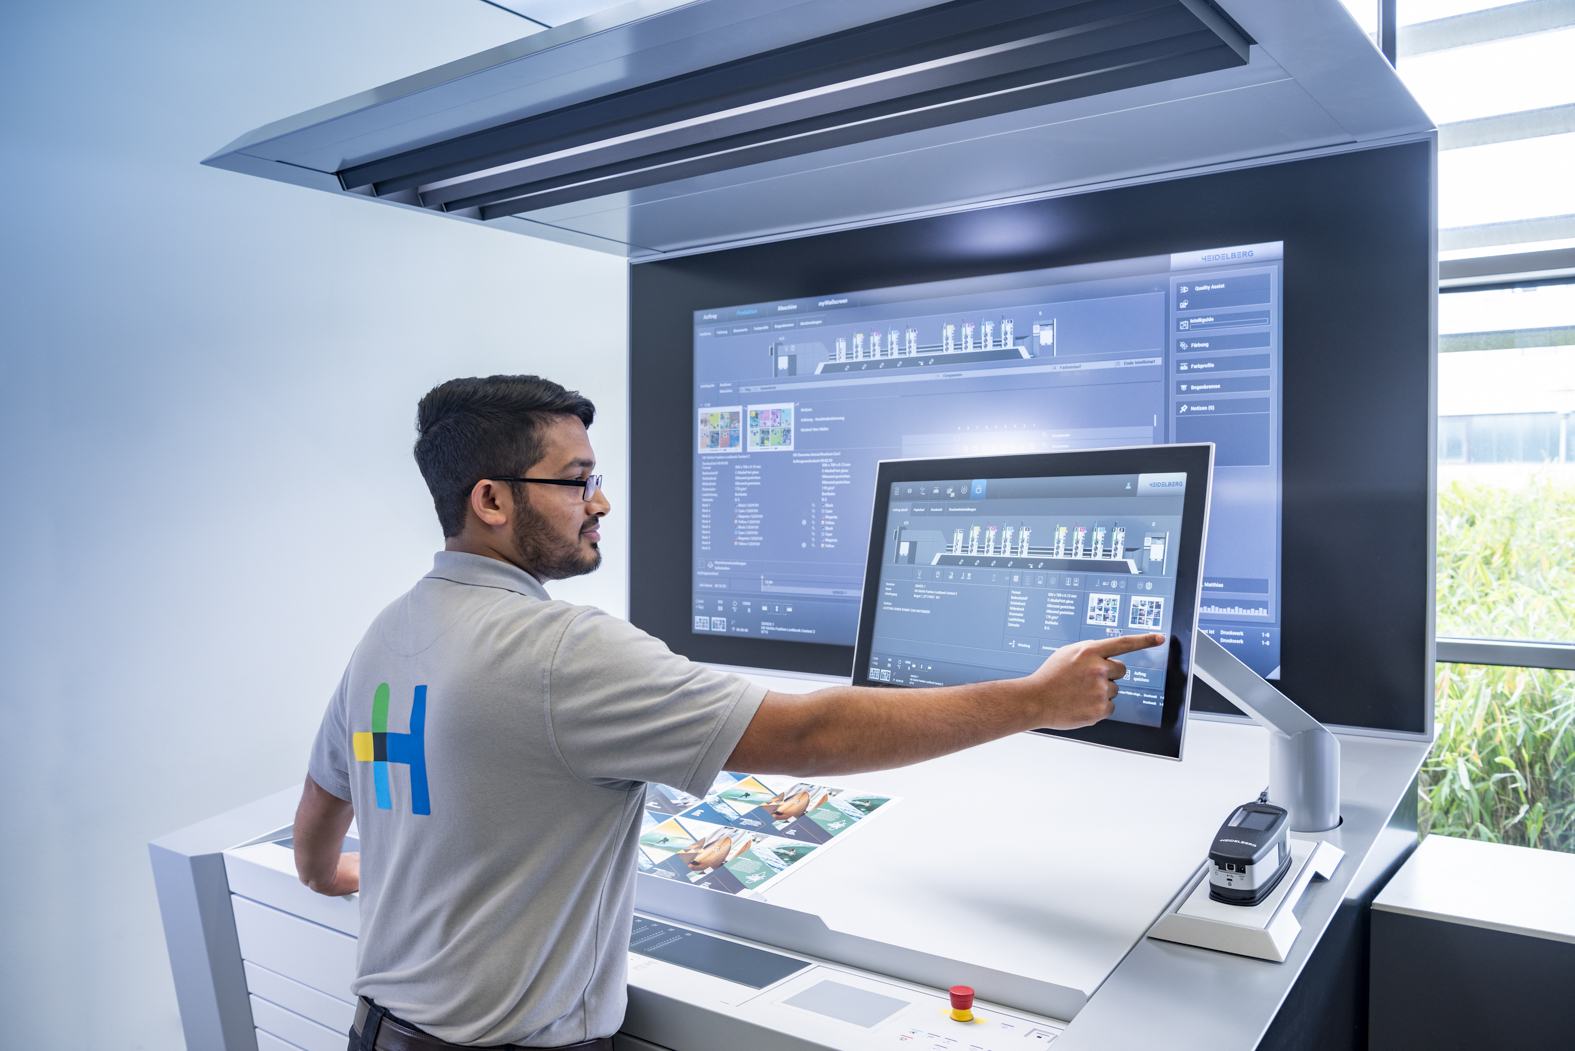 Новый пульт Prinect Press Center, новая операционная система Speedmaster Operating System, светодиодная стандартная лампа дневного света — компания Heidelberg создала современную, удобную для пользователя рабочую станцию.